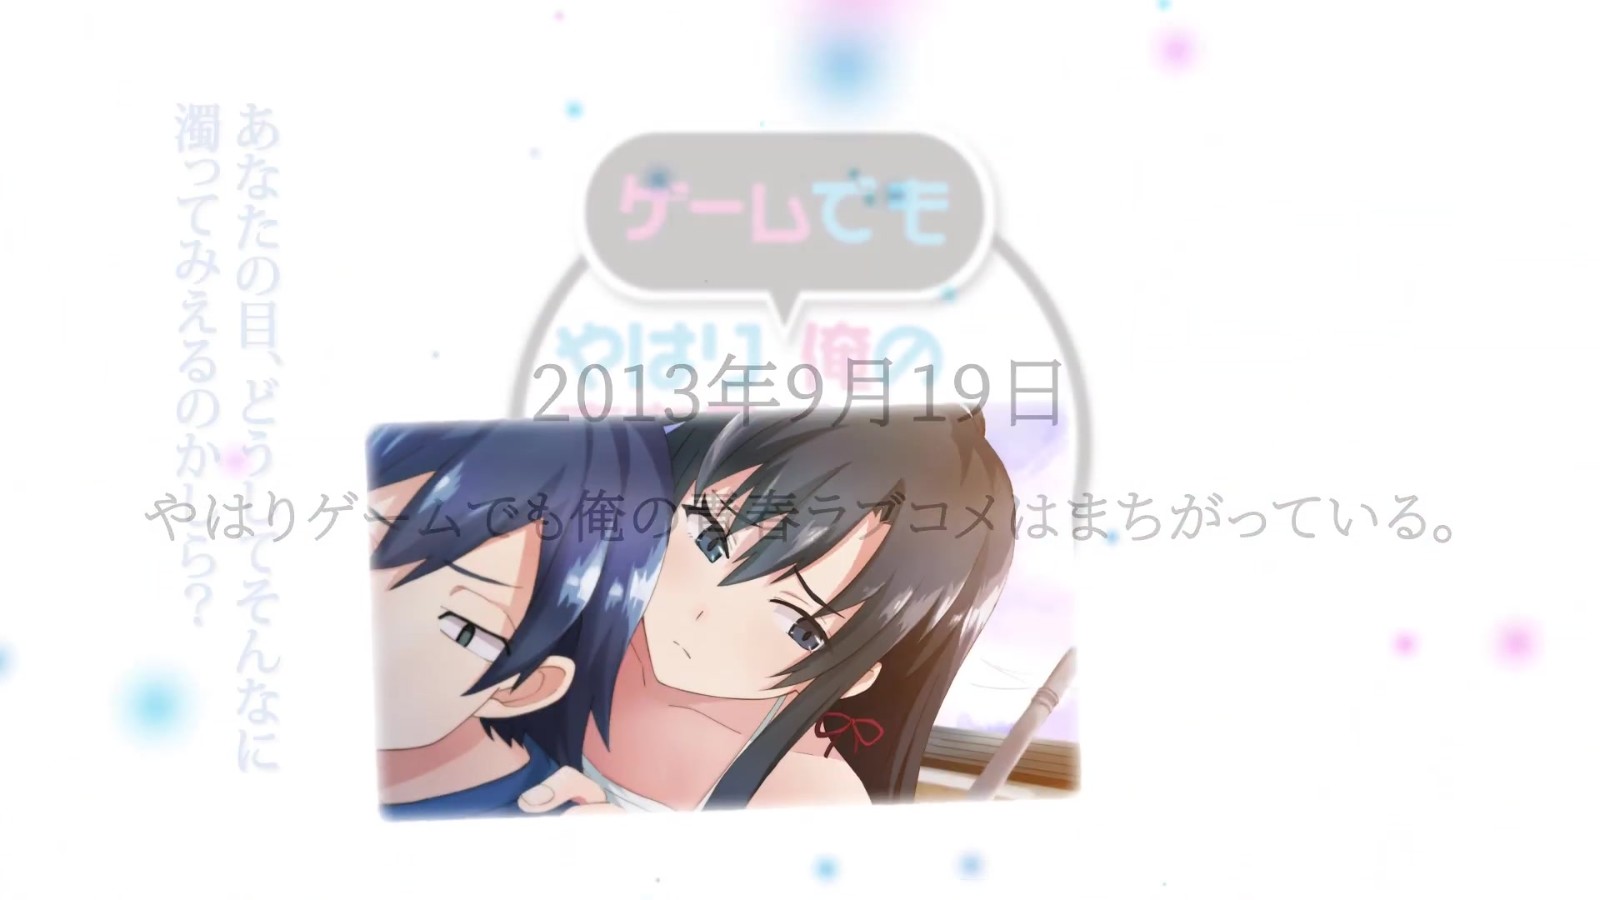 《我的青春恋爱物语果然有问题 完》游戏版4/27推出